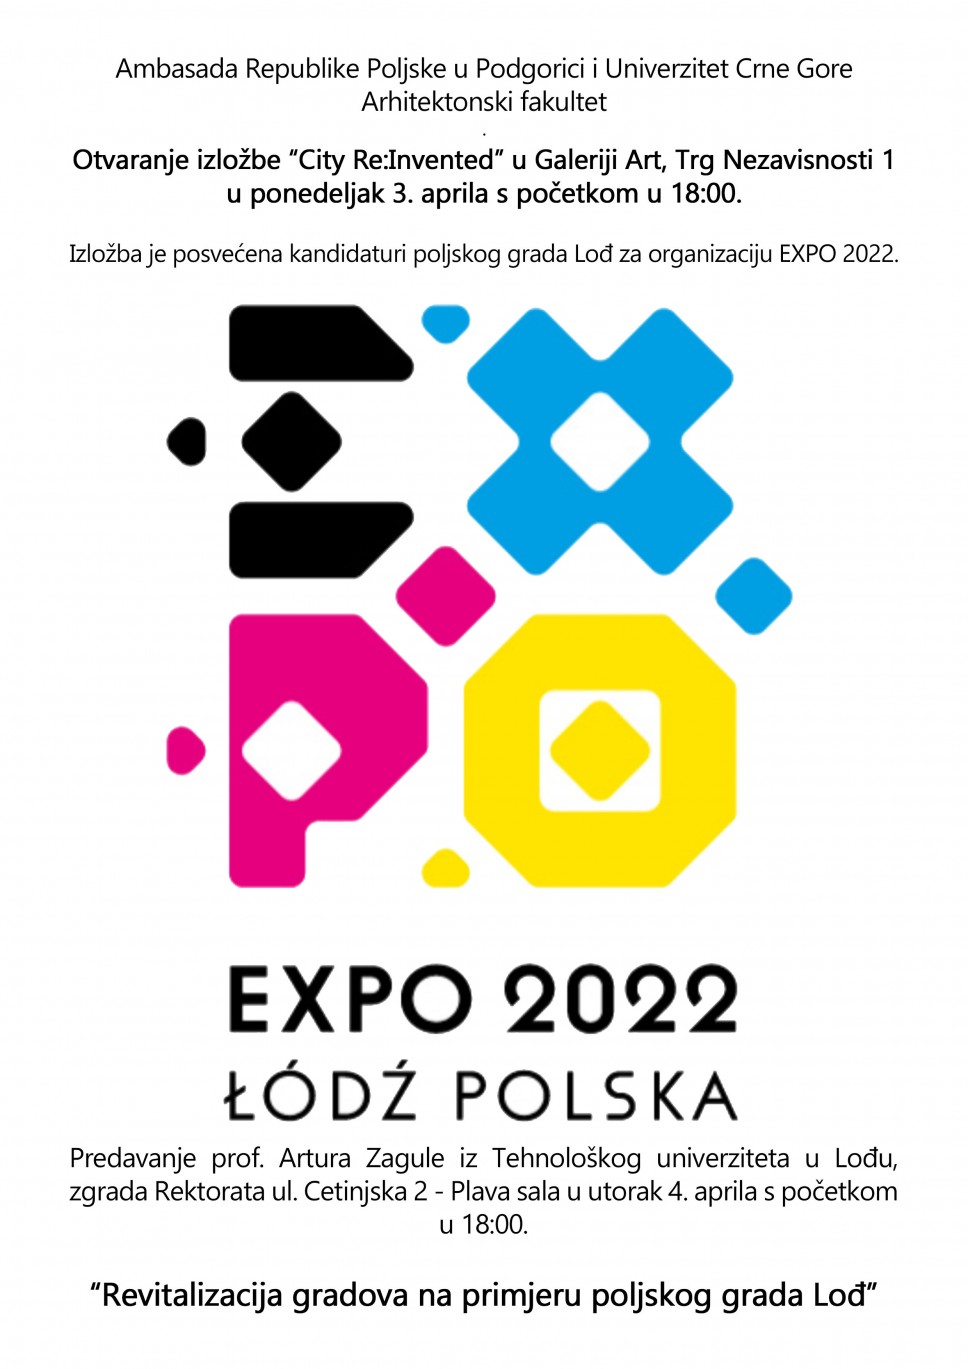 IZLOŽBA EXPO 2022 I PREDAVANJE_ prof. Artur Zagula_Tehnološki Univerzitet u Lođu_04.04.2017.